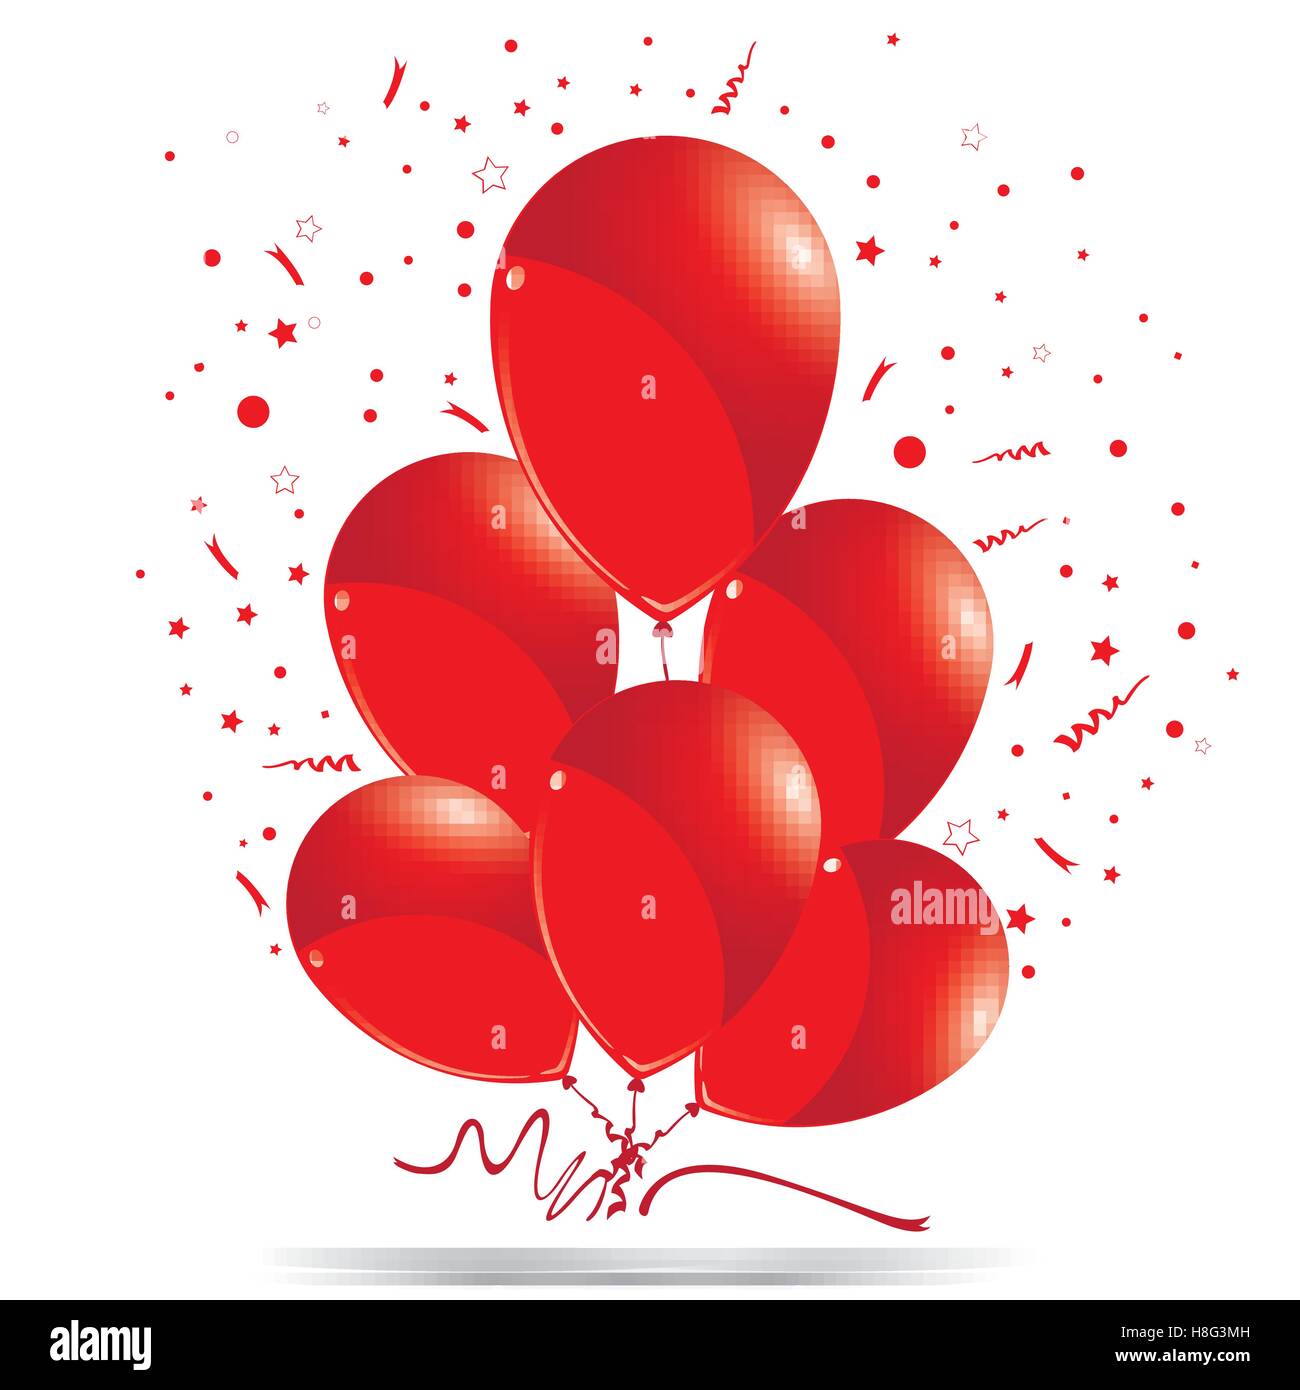 Globos, globos rojos, cumpleaños, fiesta, colorido, día